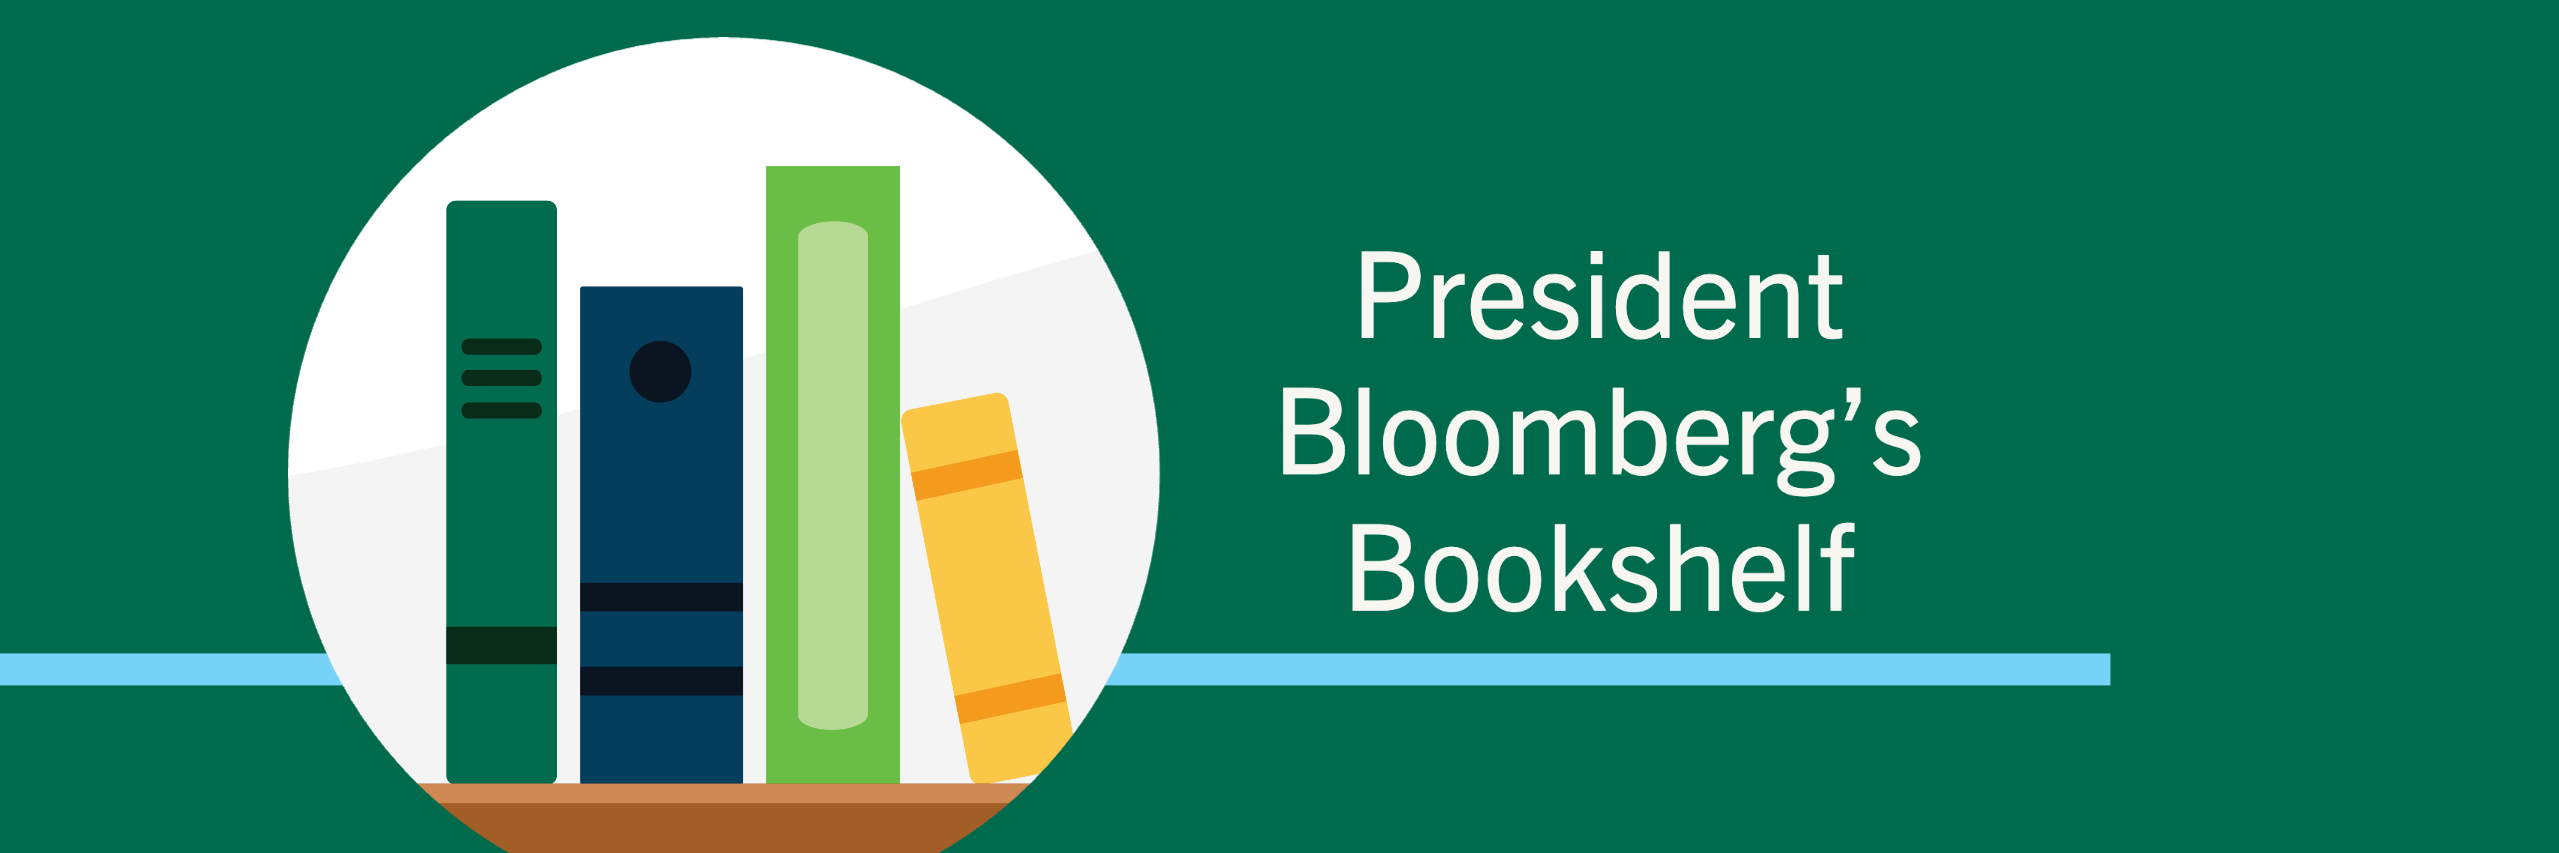 President Bloomberg's Bookshelf